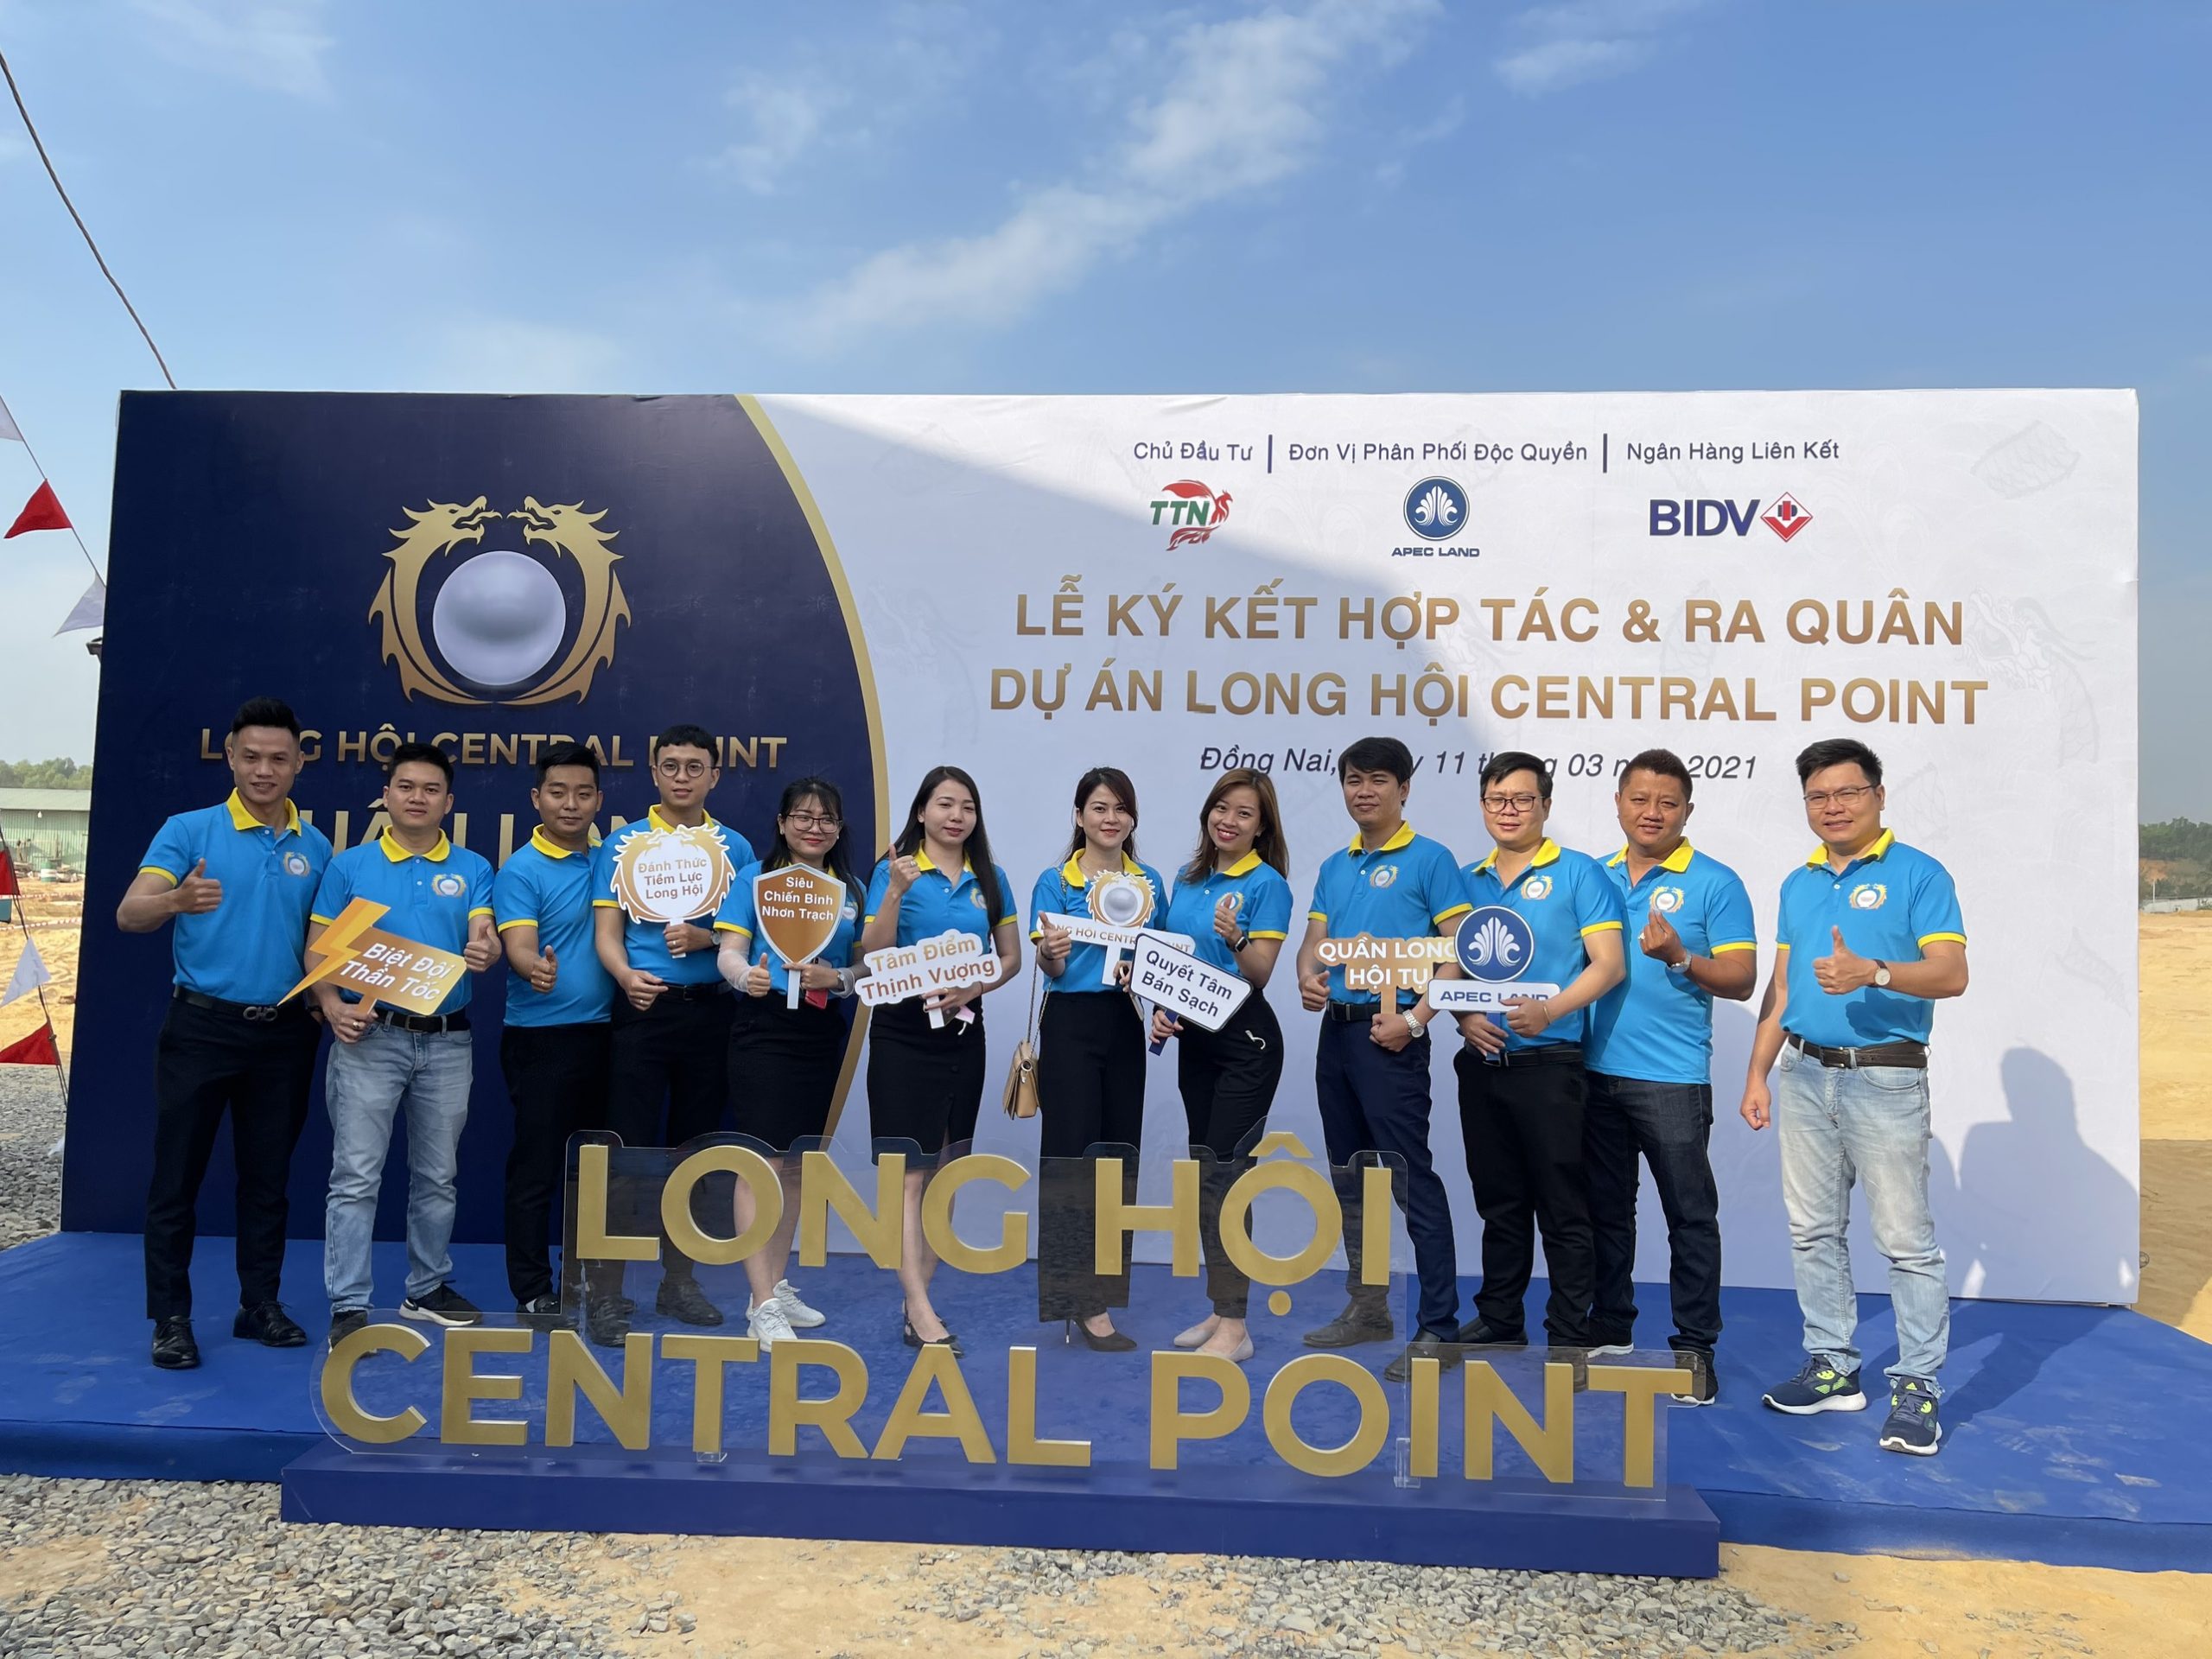 Lễ ký kết hợp tác giữa các đơn vị phân phối độc quyền và chủ đầu tư dự án Long Hội Central Point